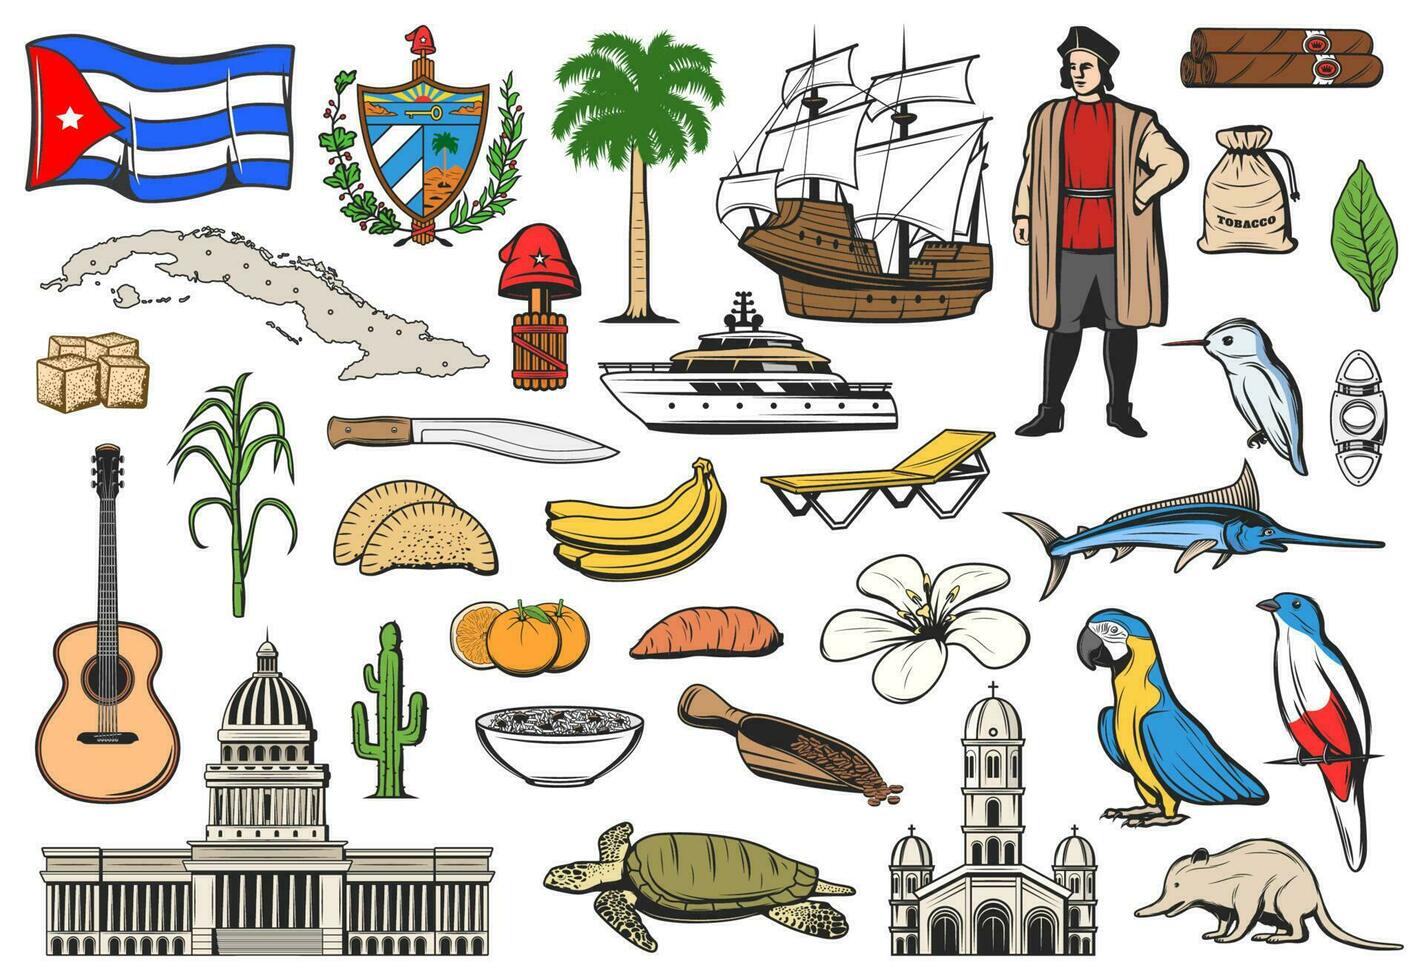 Cuba reis, Havana oriëntatiepunten, bezienswaardigheden bekijken symbolen vector